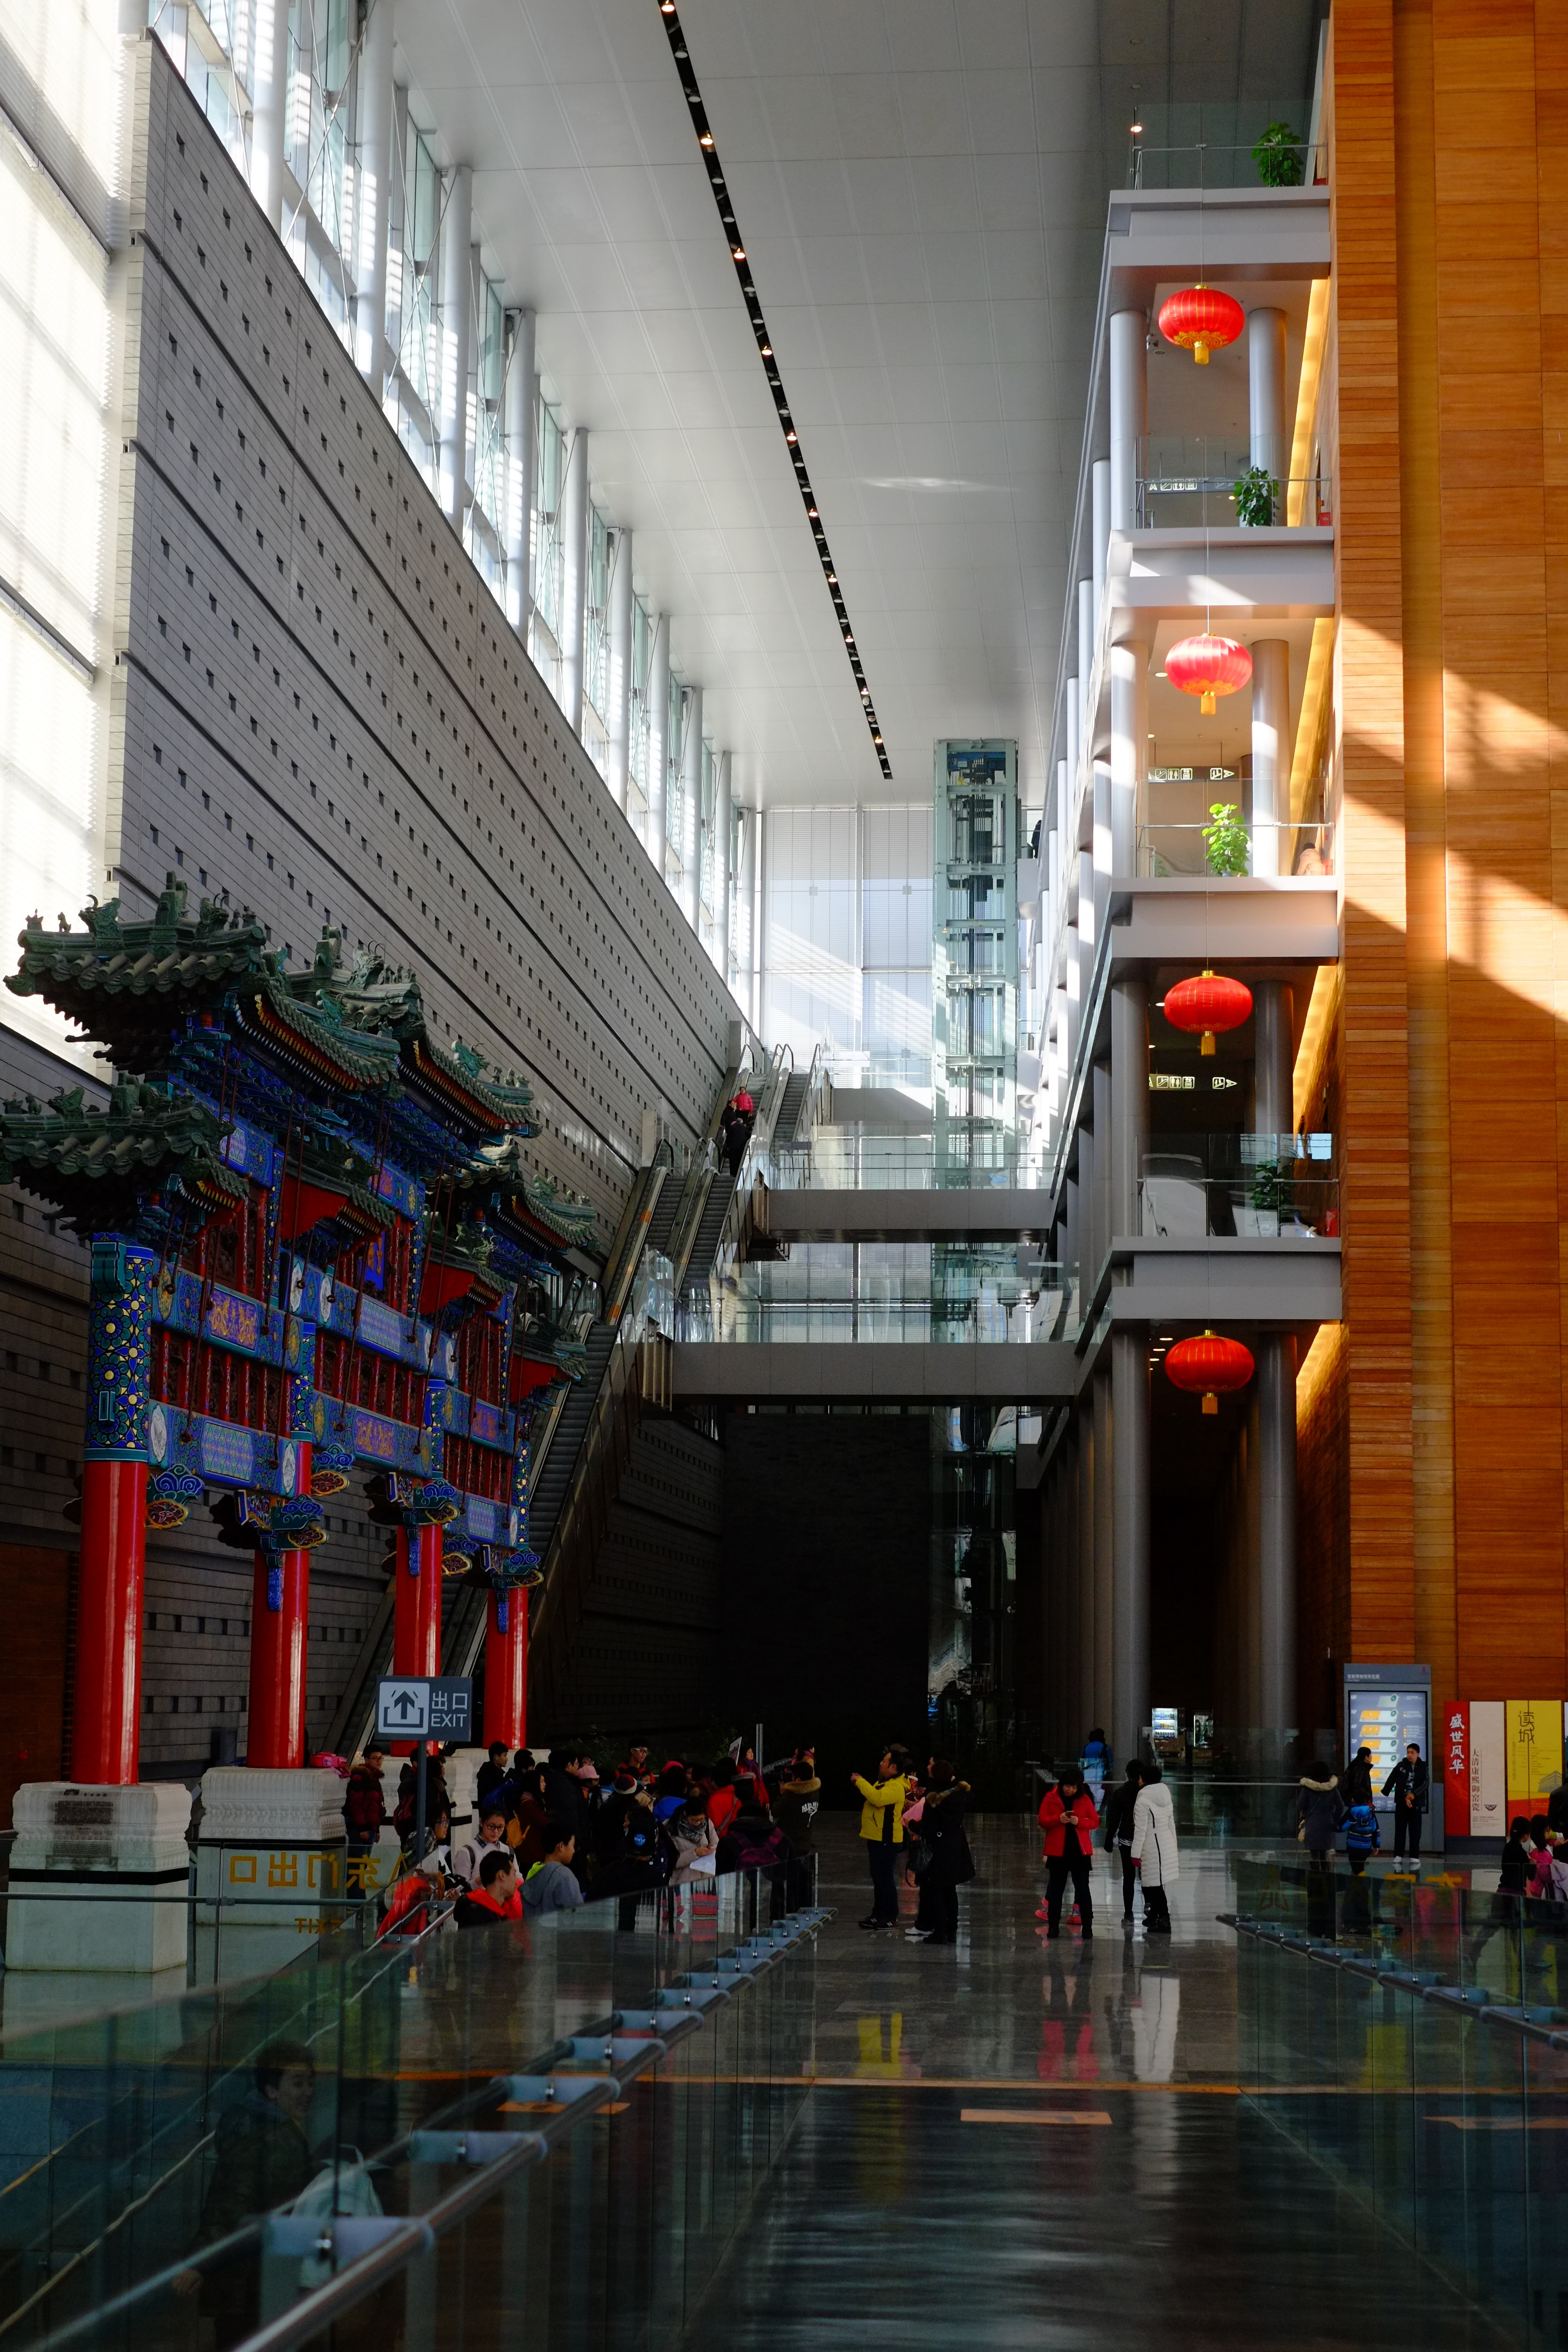 【携程攻略】北京首都博物馆适合单独旅行旅游吗,首都博物馆单独旅行